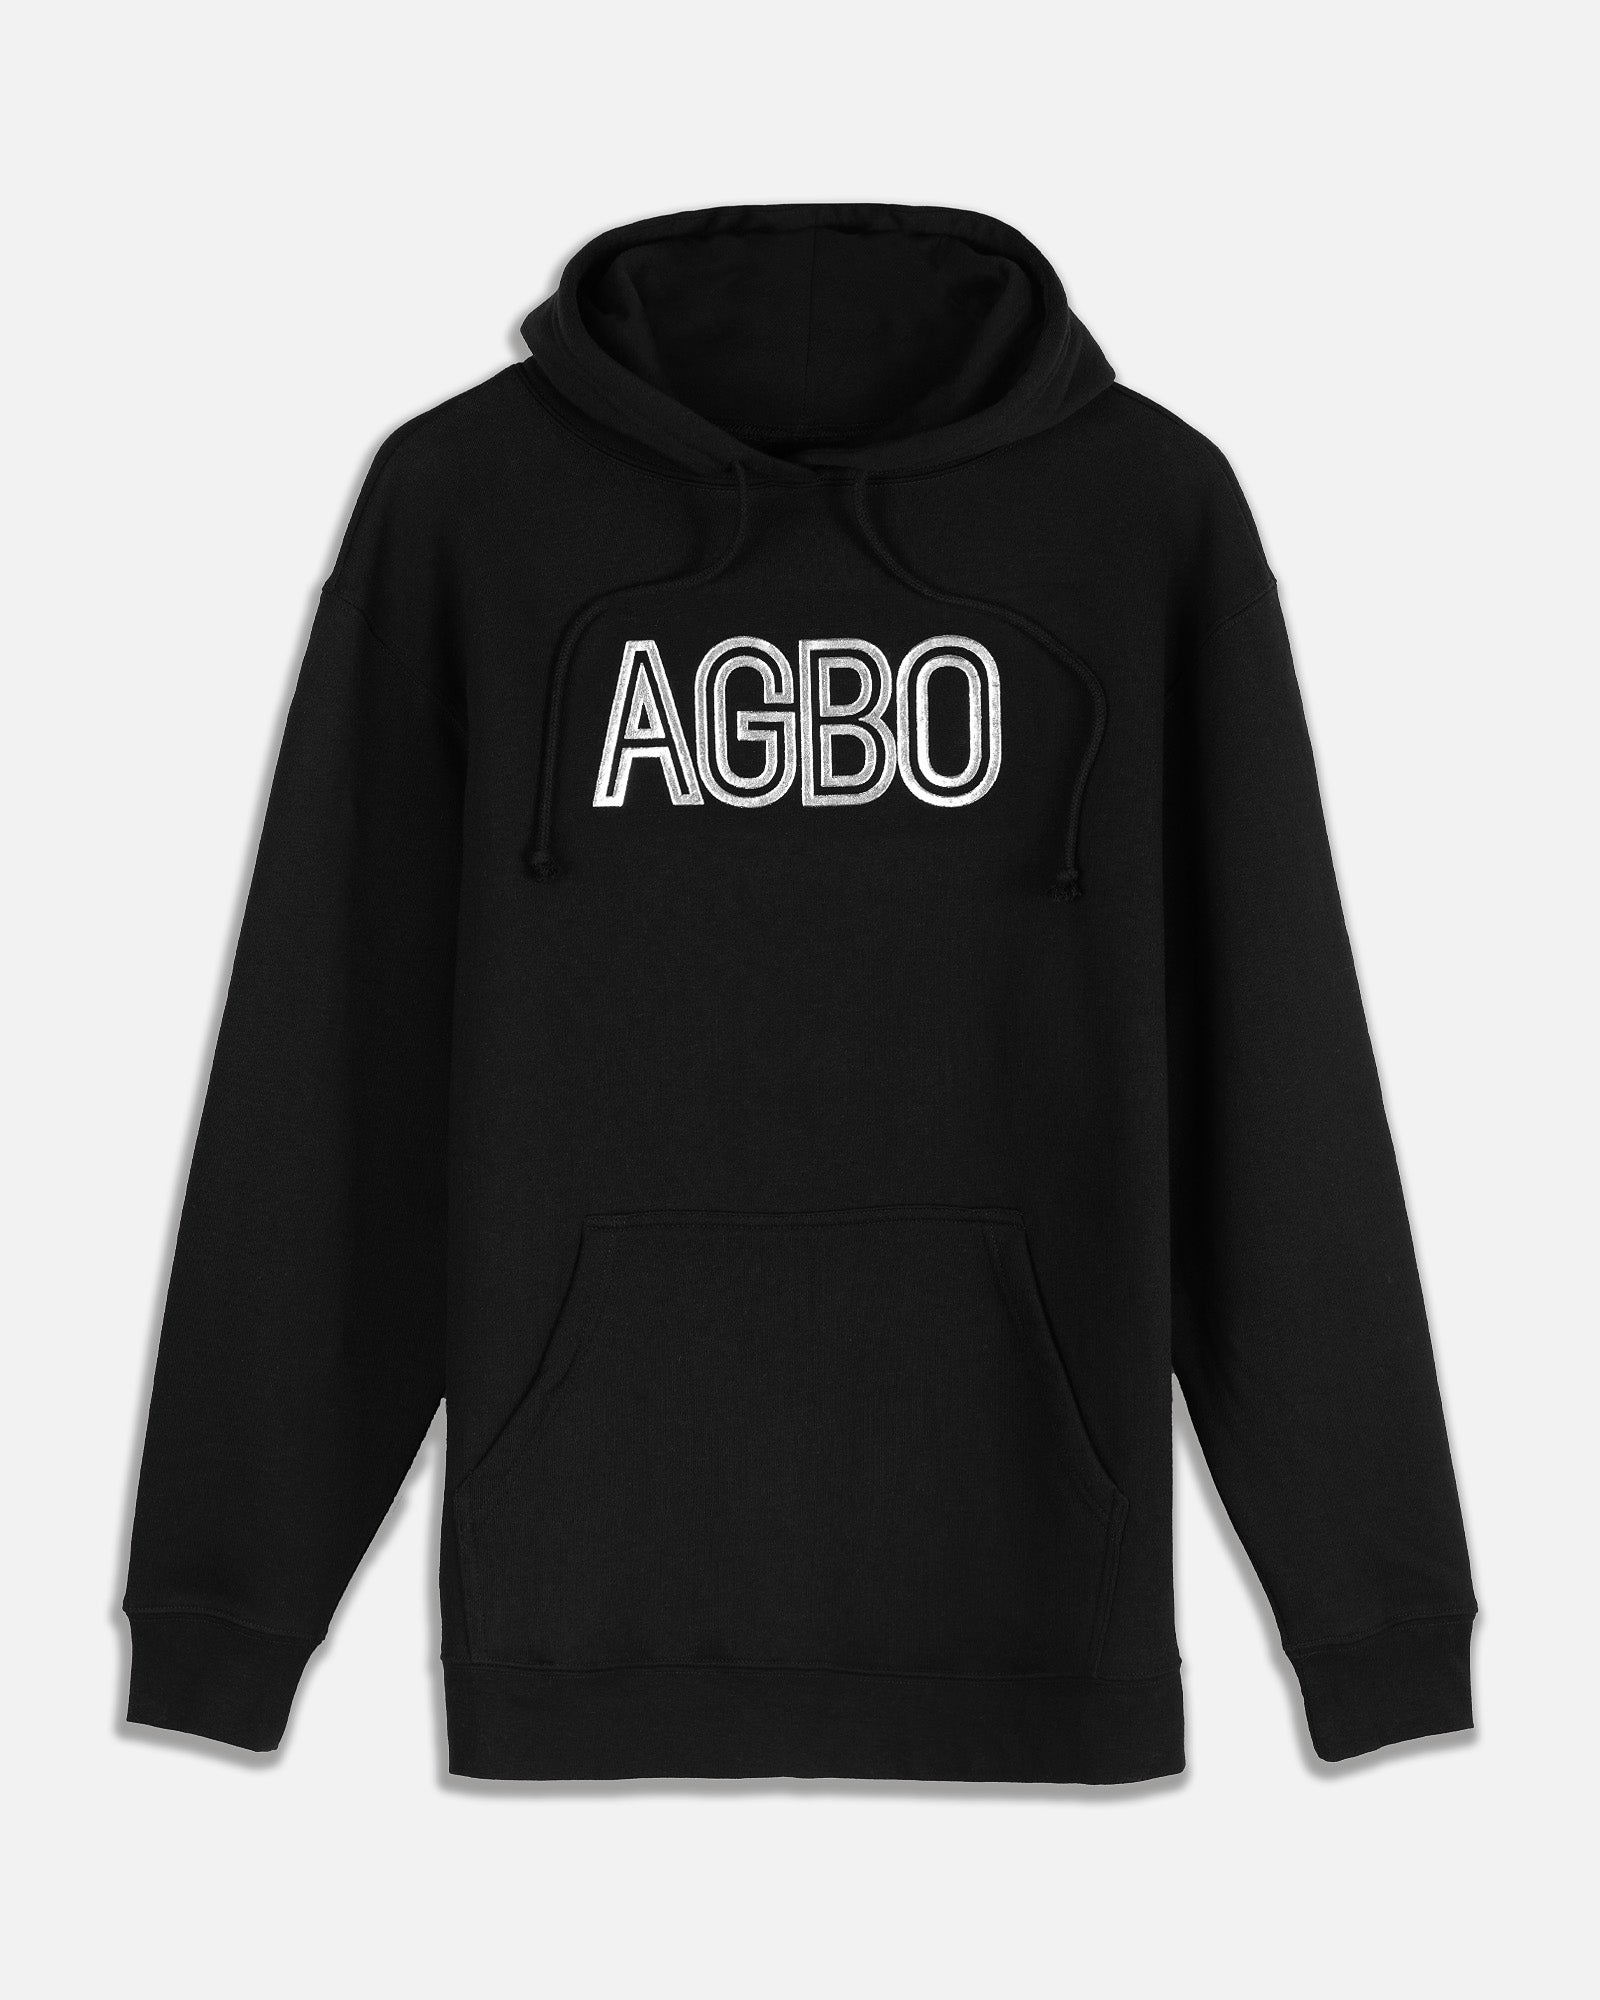 Metallic Logo AGBO Hooded Sweatshirt